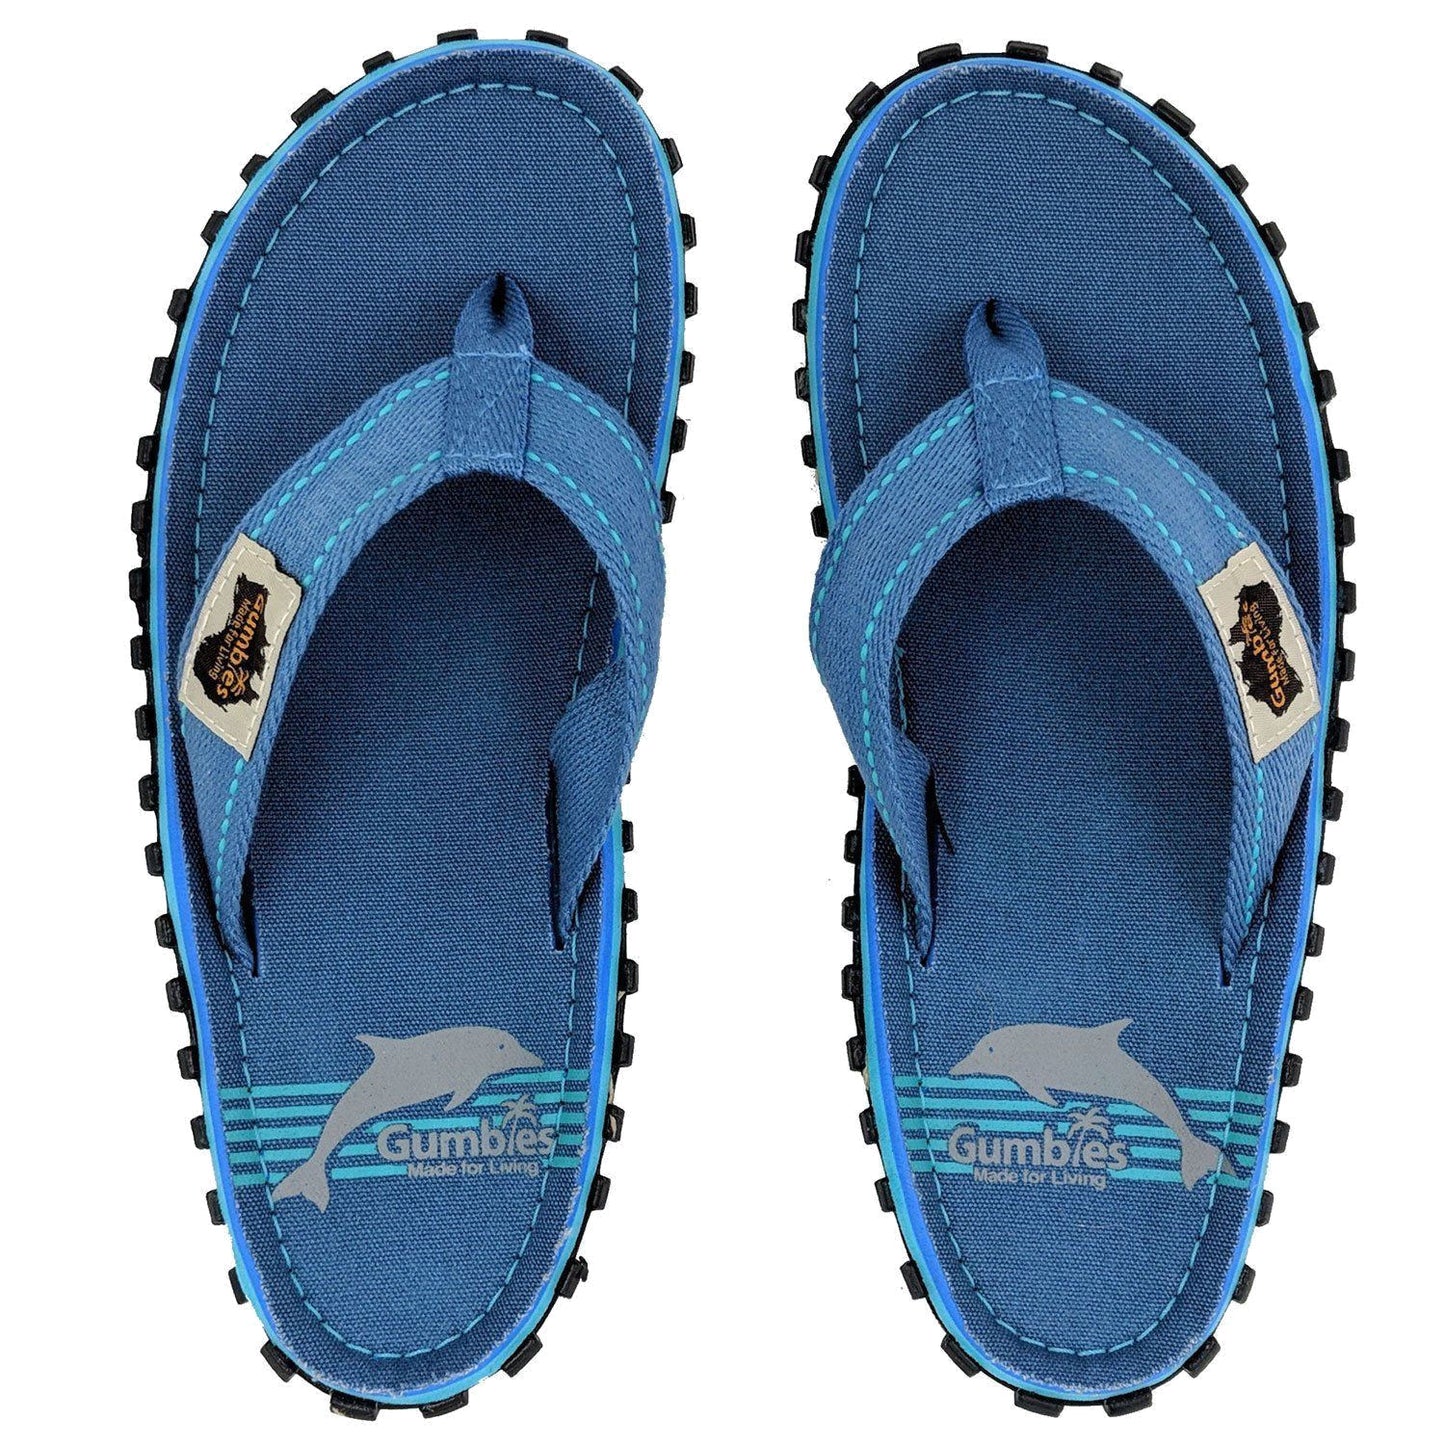 Gumbies Womens 'Islander' Flip Flops - Pool Blue / Dolphin Print